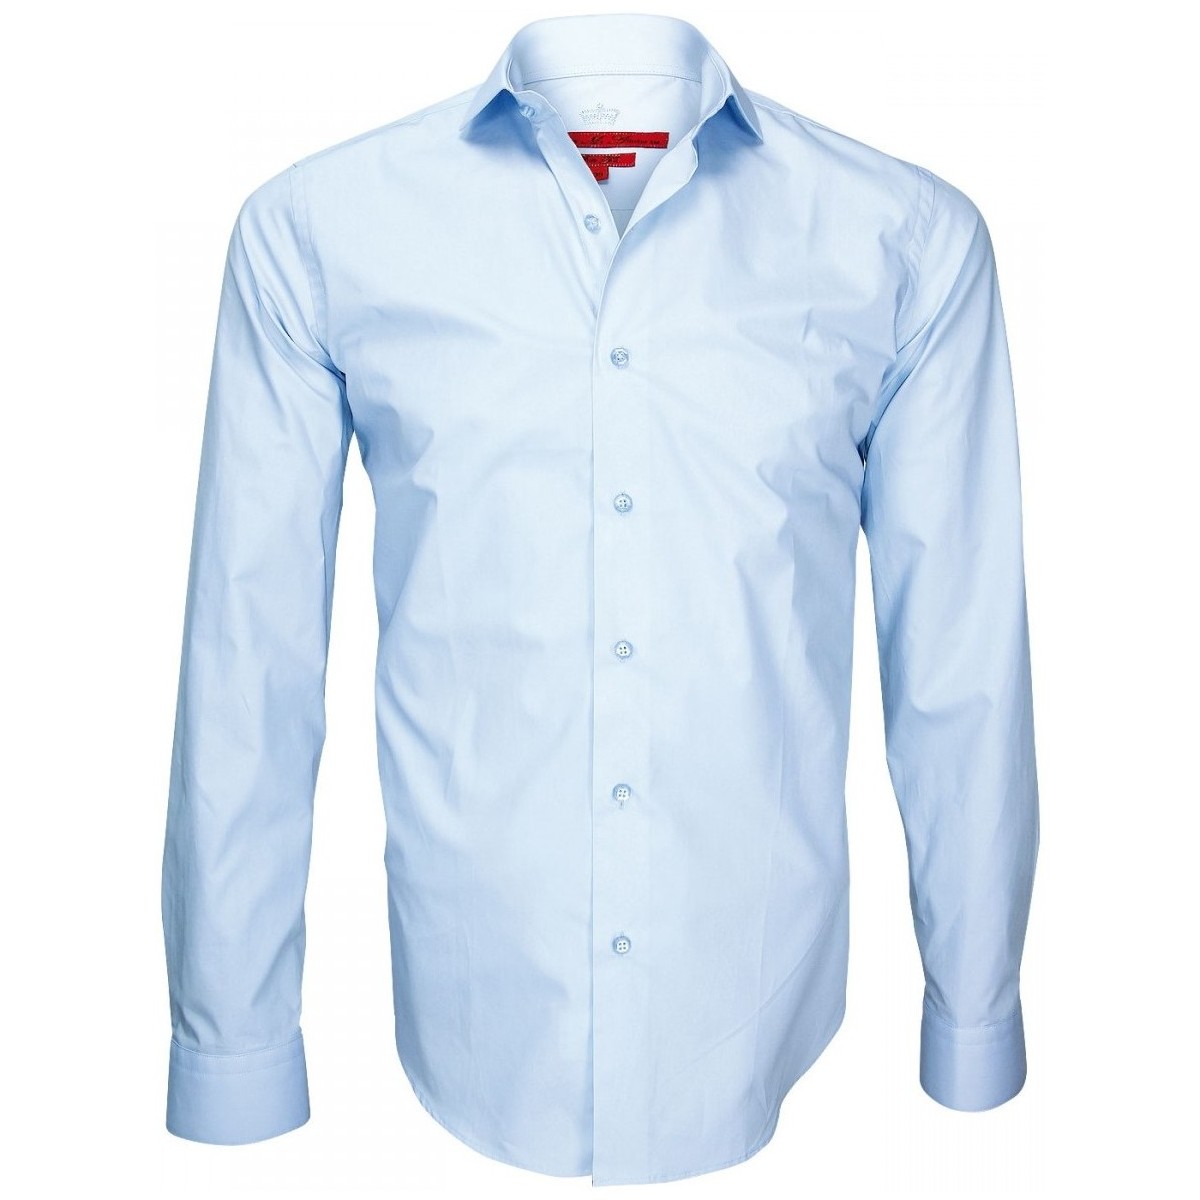 Vêtements Homme Chemises manches longues Andrew Mc Allister chemise double fil 120/2 luxury bleu Bleu